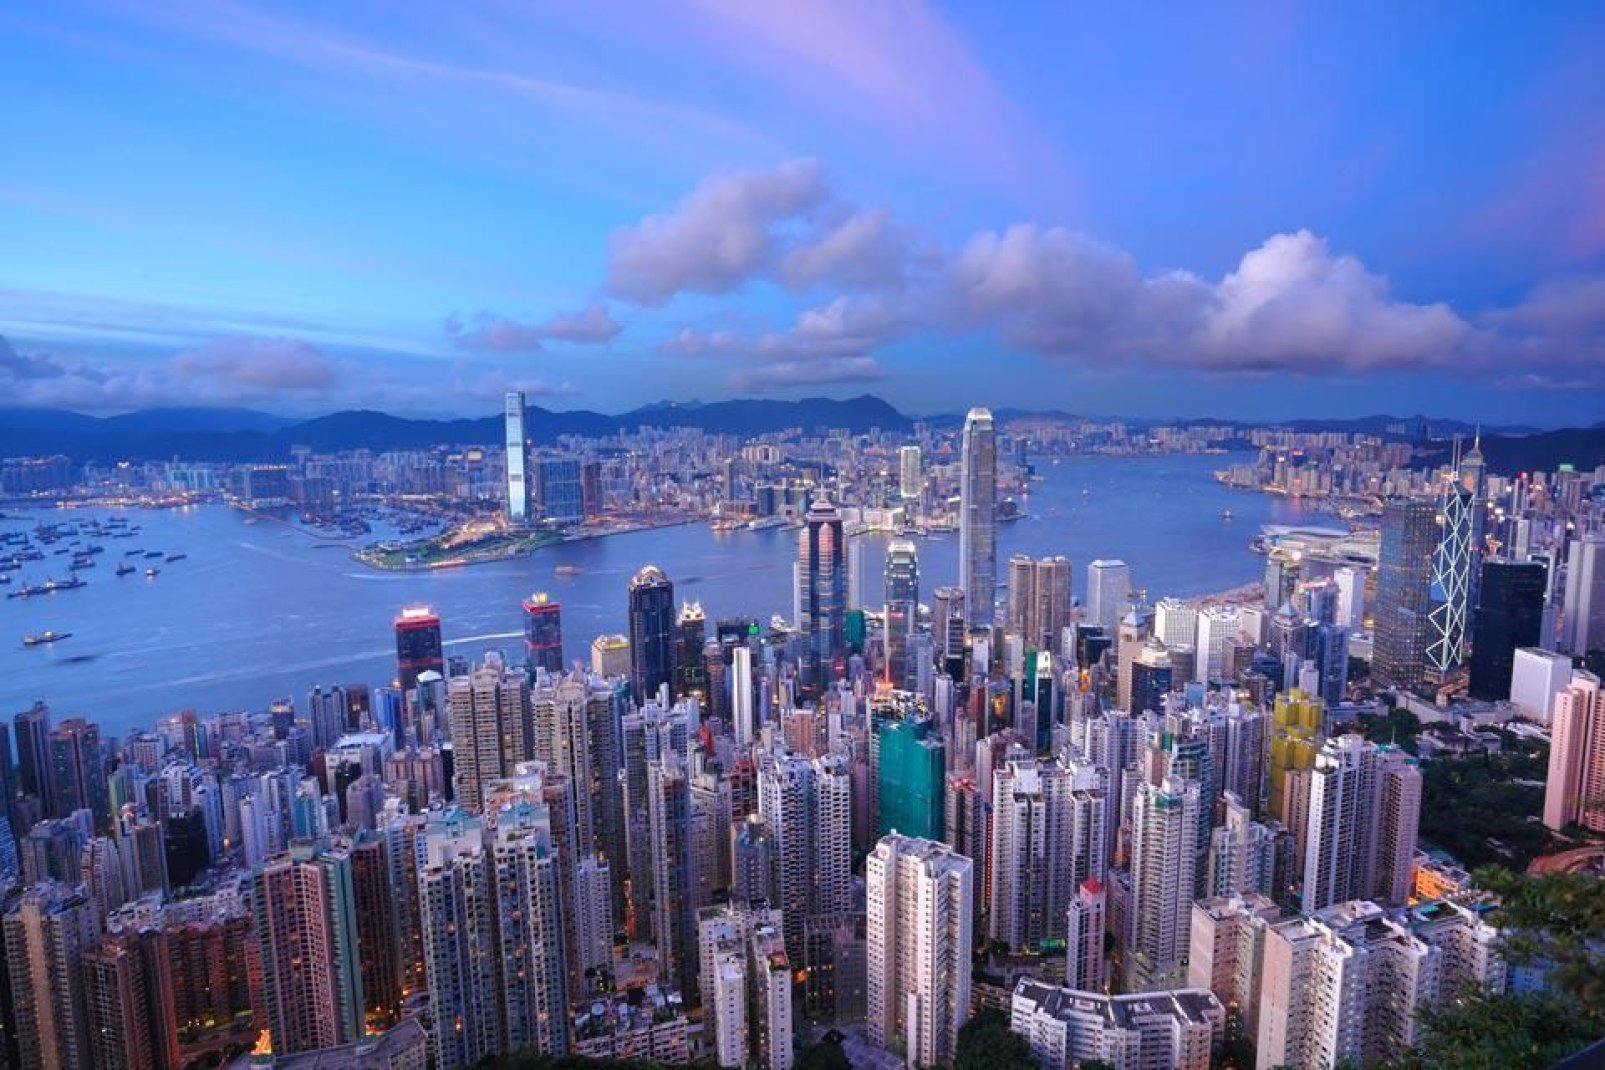 Corrisponde all'area urbana di Hong Kong, zona densamente popolata offre ai viaggiatori attrattive culturali e svaghi.